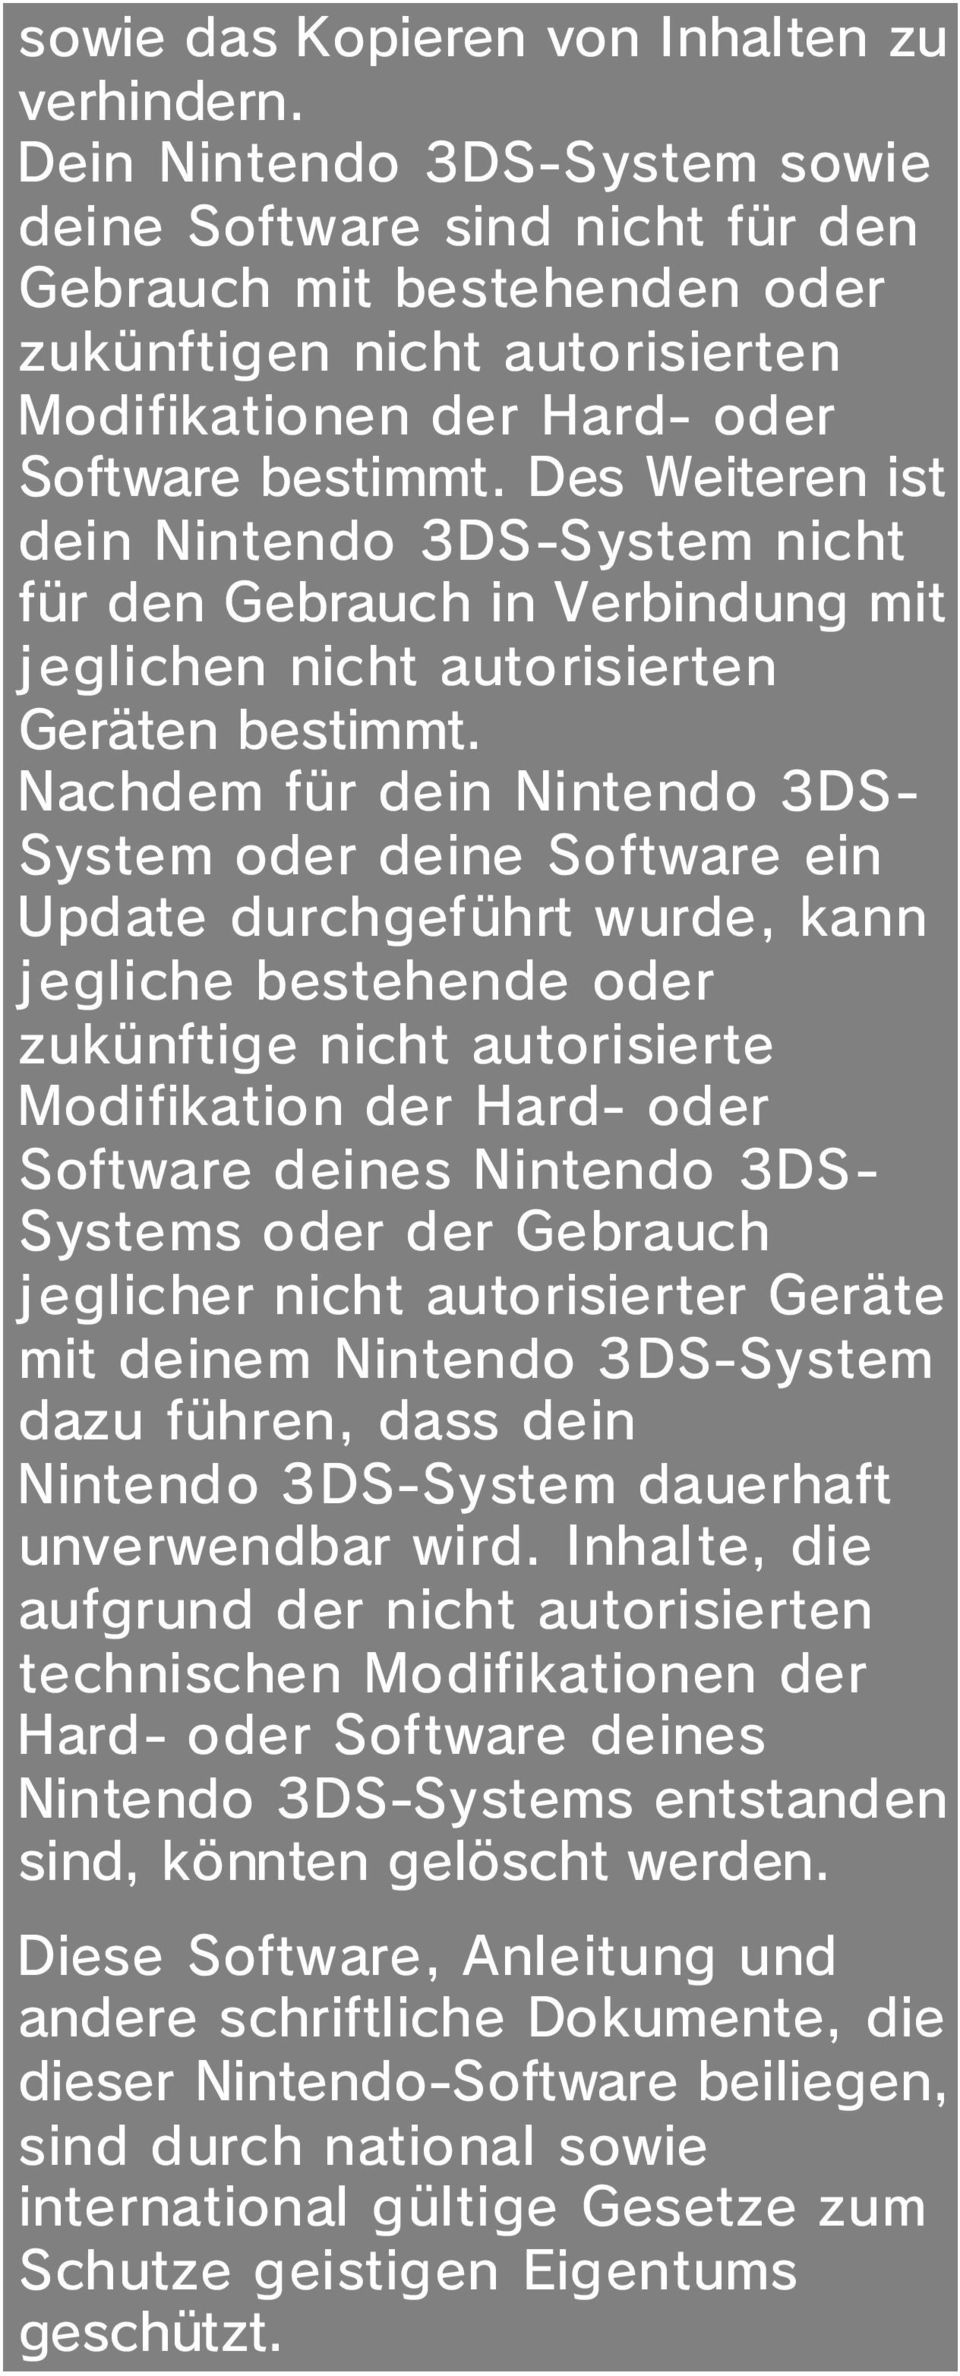 Des Weiteren ist dein Nintendo 3DS-System nicht für den Gebrauch in Verbindung mit jeglichen nicht autorisierten Geräten bestimmt.